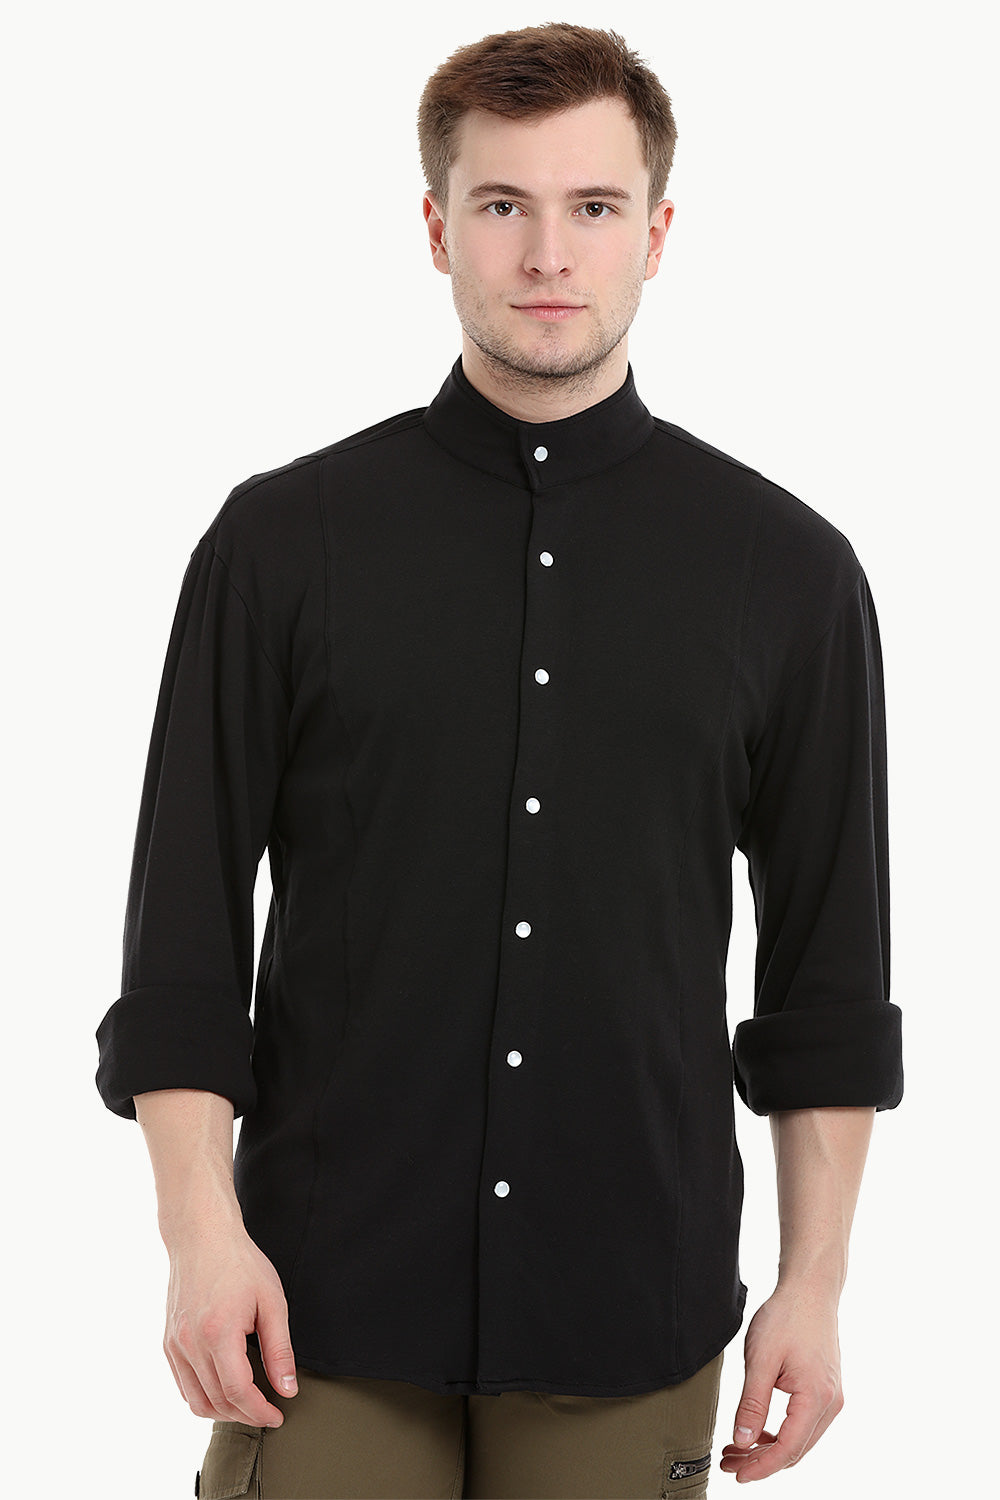 Mens Black Snap Button Knit Shirt – Zobello